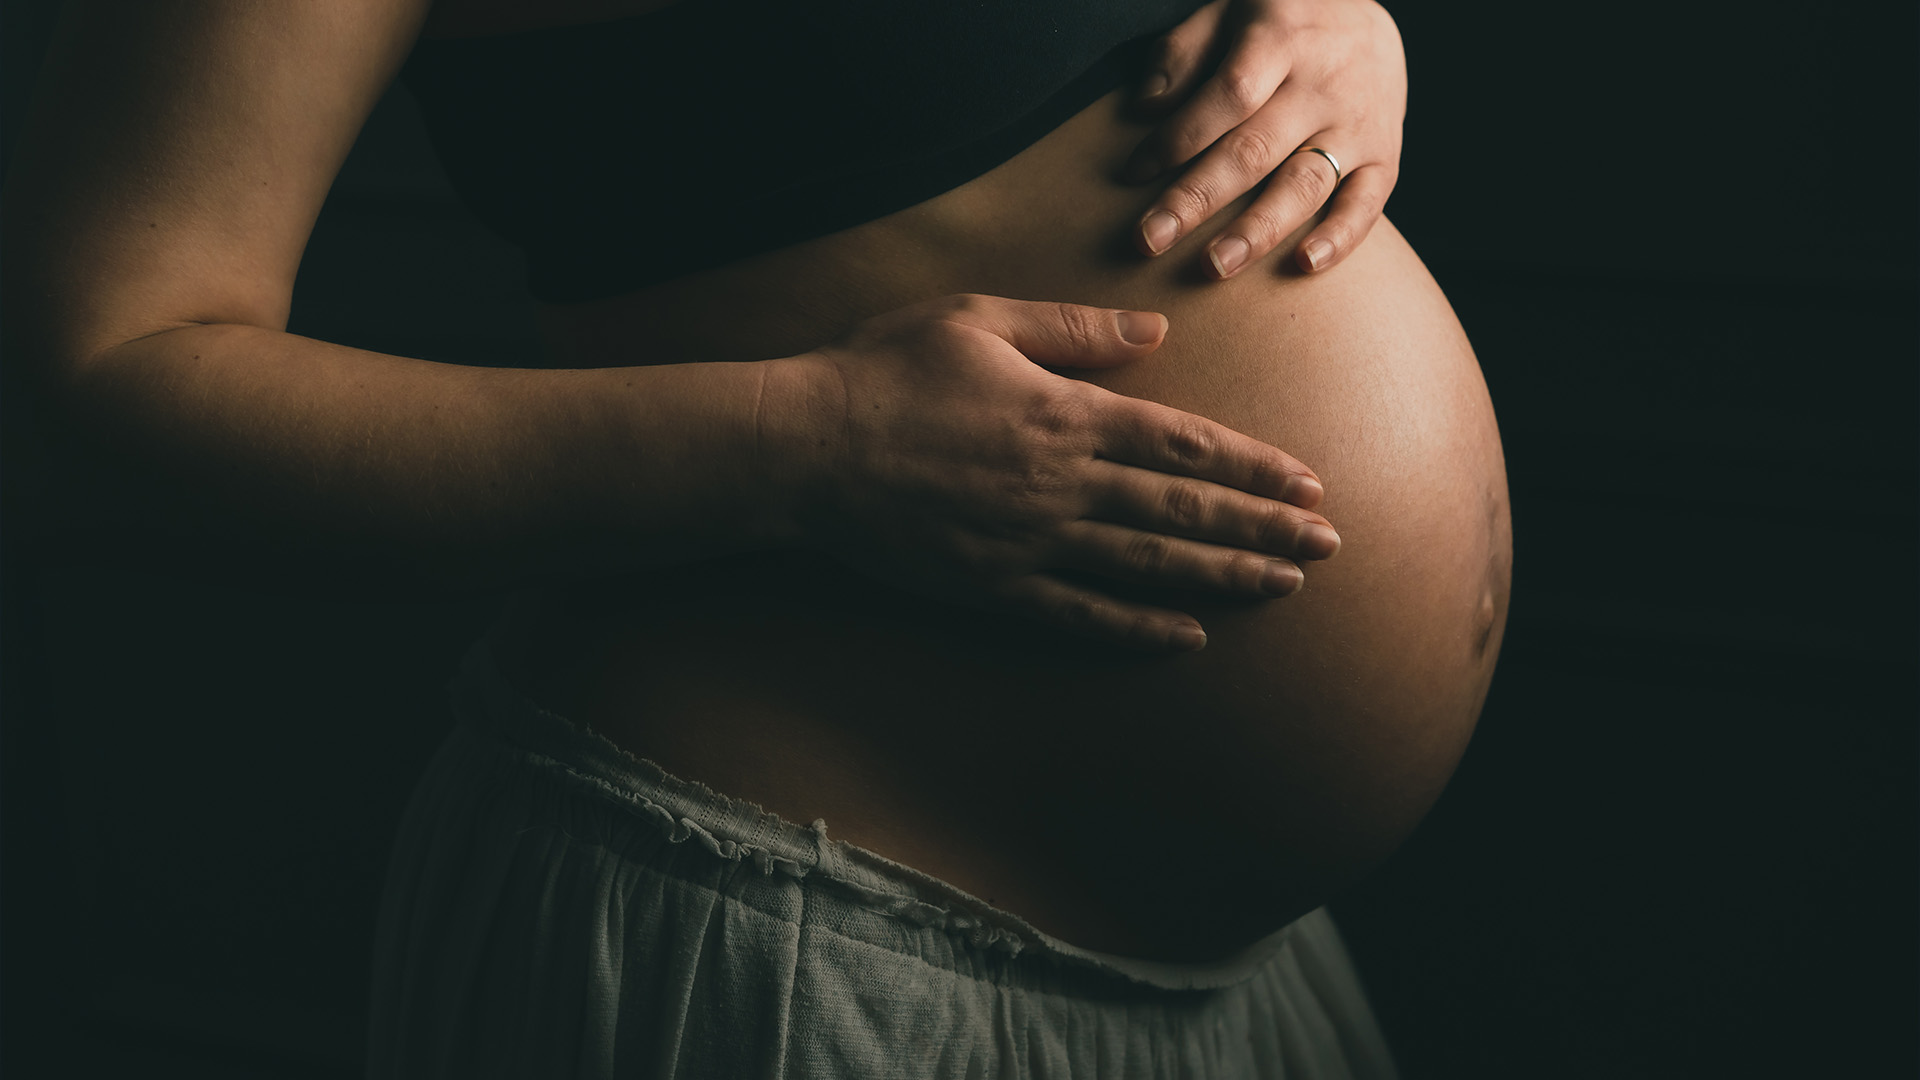 Le projet « Accès aux services juridiques en périnatalité et petite enfance » vise à fournir des ressources, des services et des conseils juridiques aux femmes enceintes racisées et à leur famille vivant en situation de vulnérabilité à Montréal.